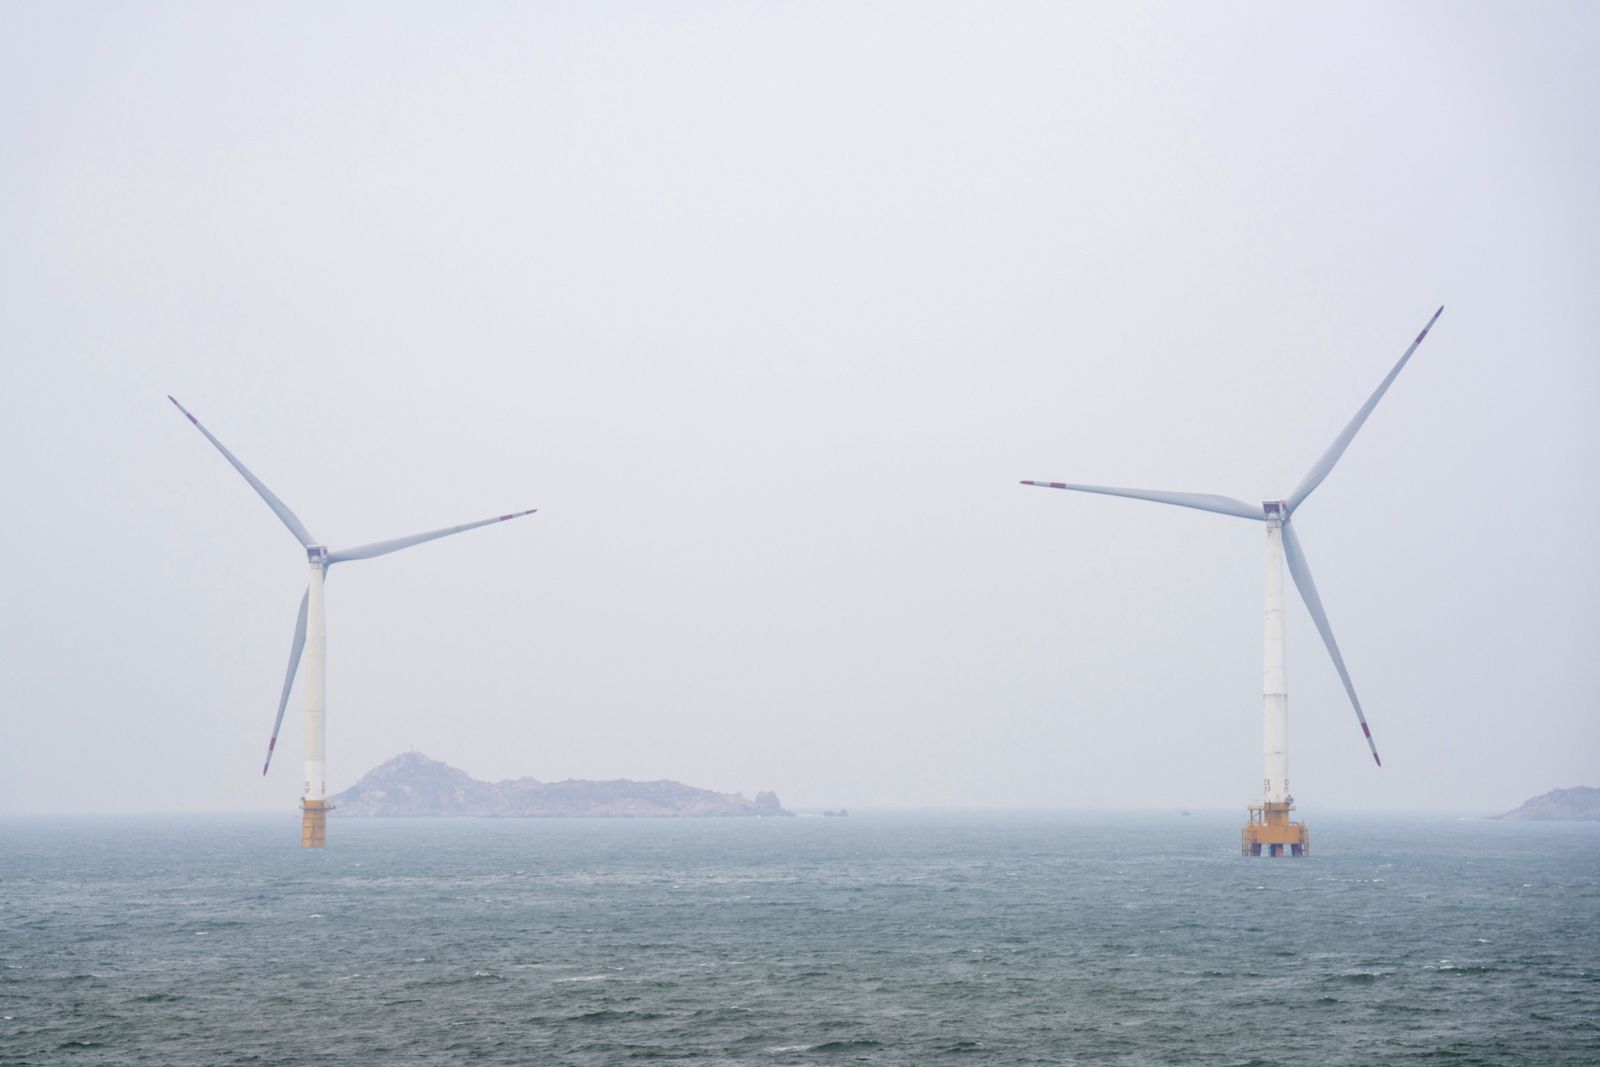 تخارج شركات يابانية من مشاريع تايوان يعمق أزمة طاقة الرياح